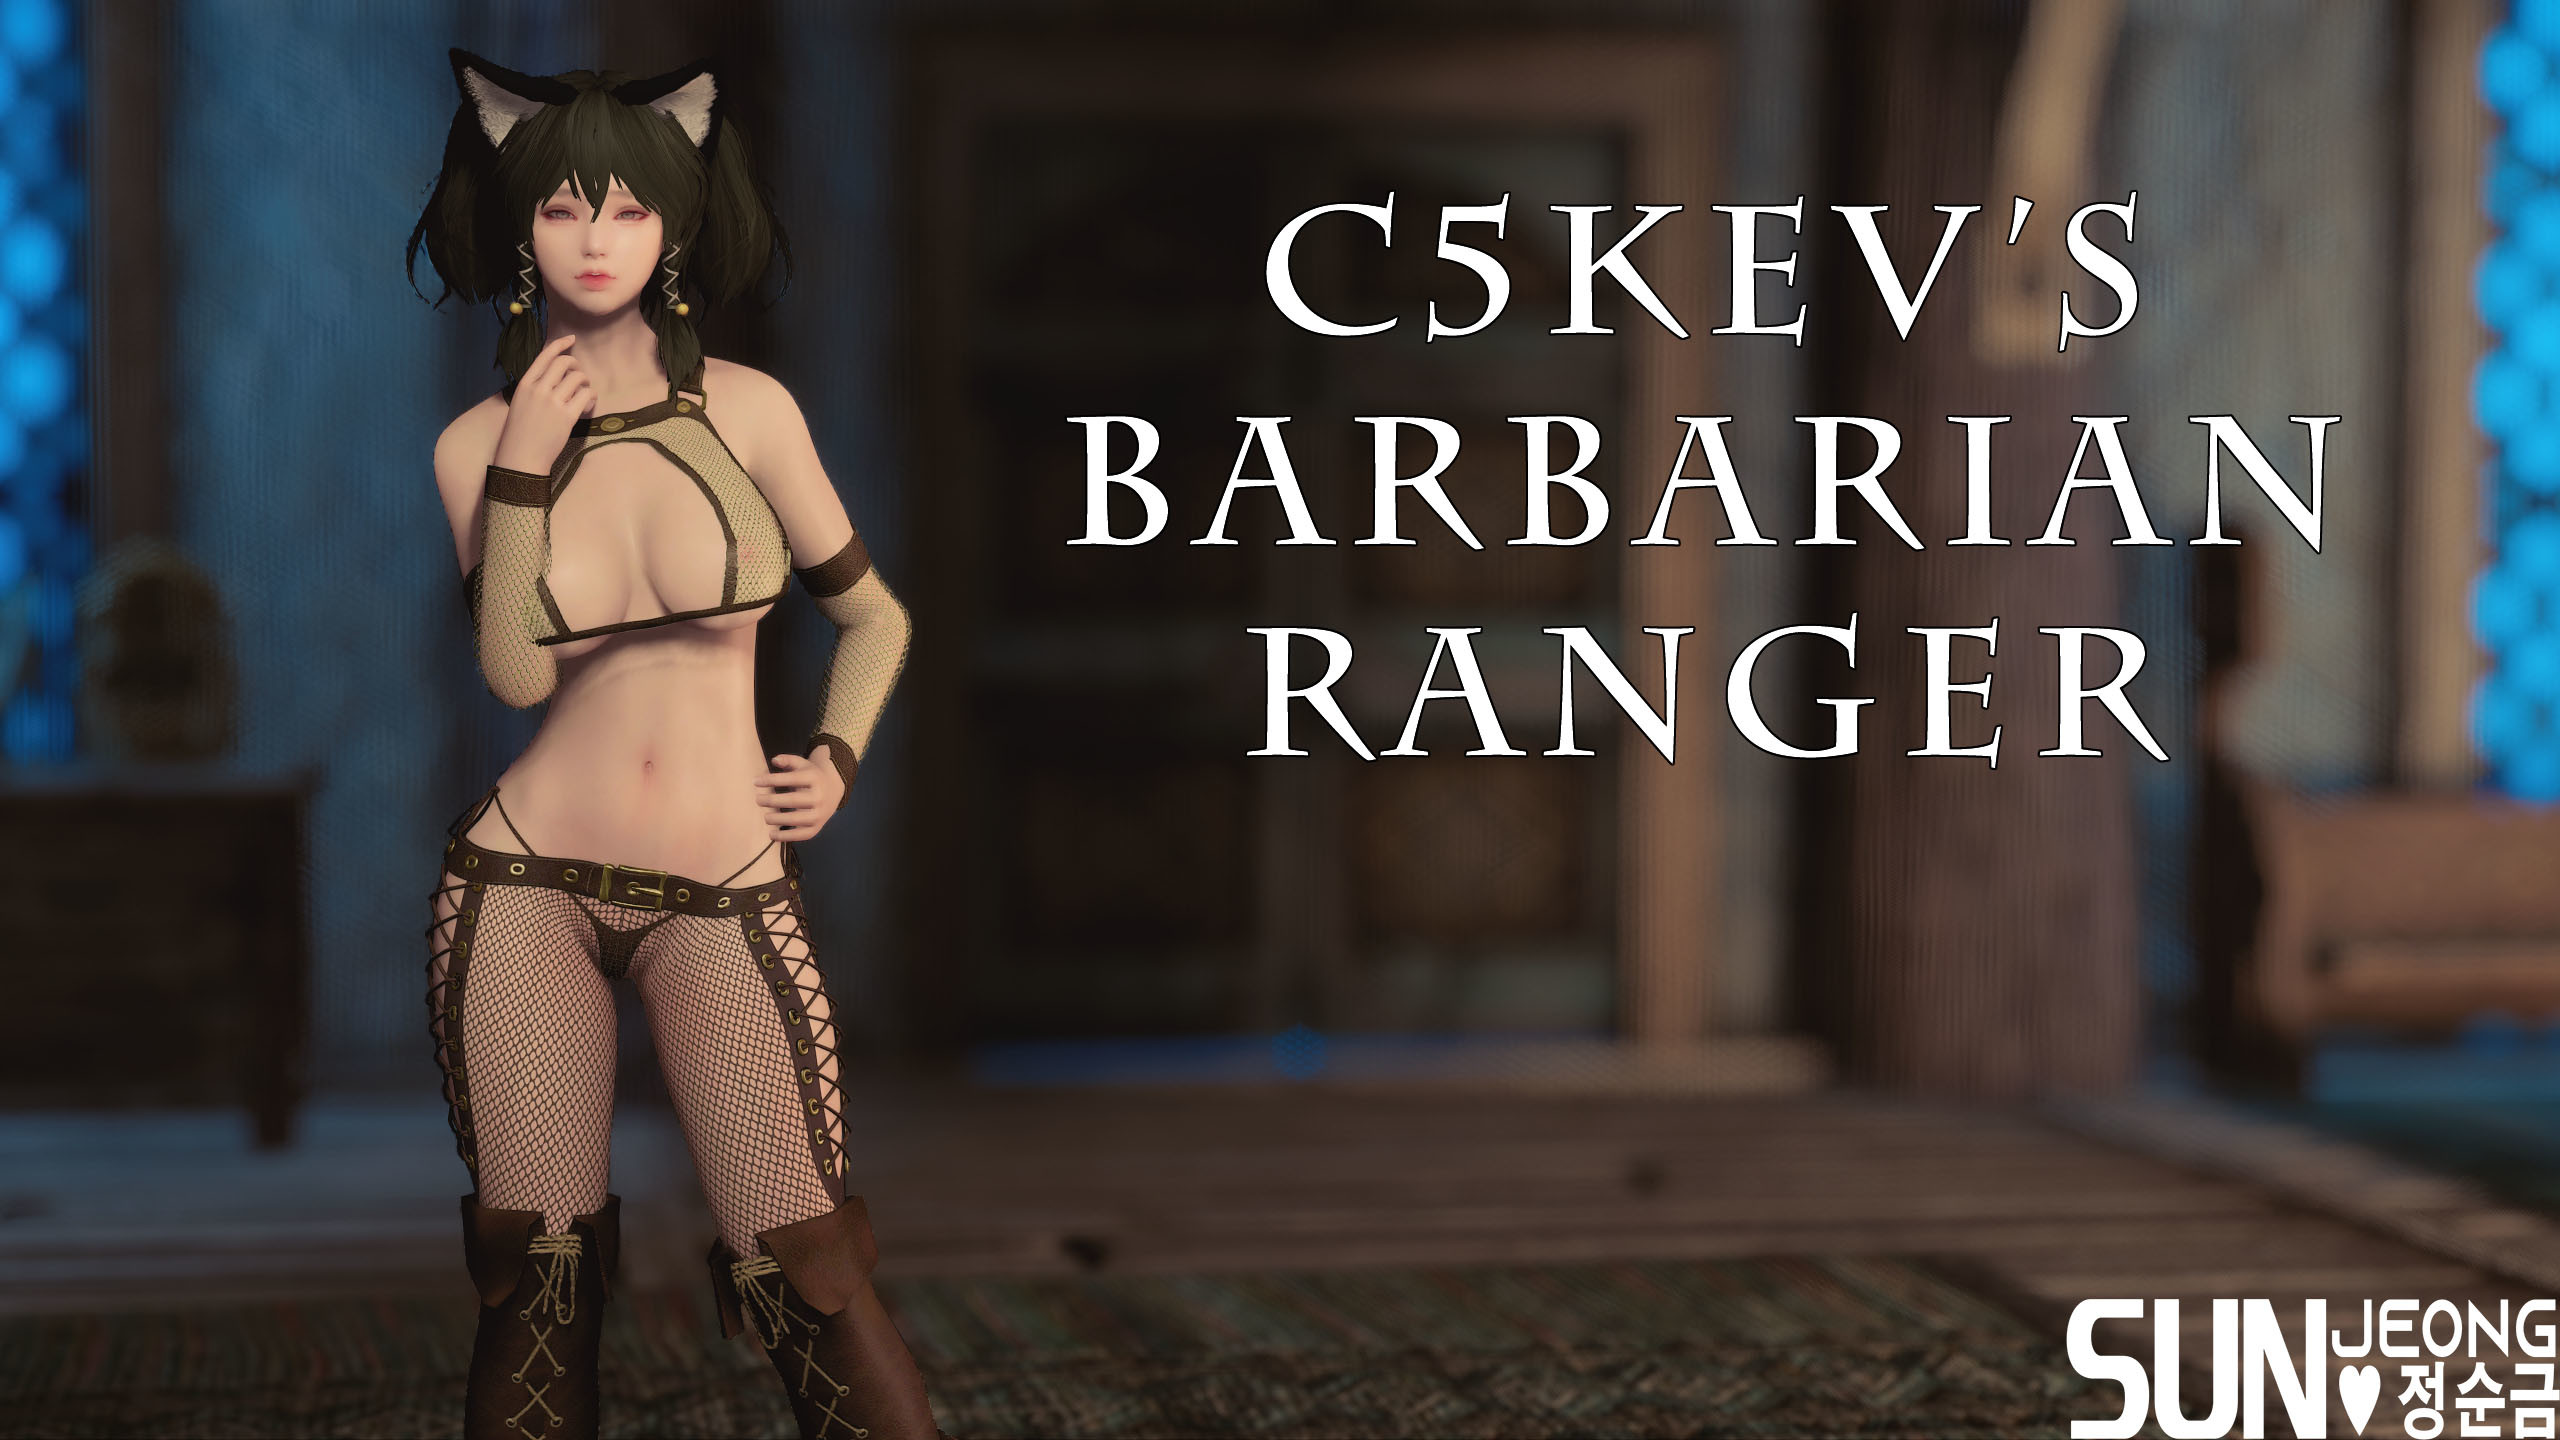 C5Kev's Barbarian Ranger